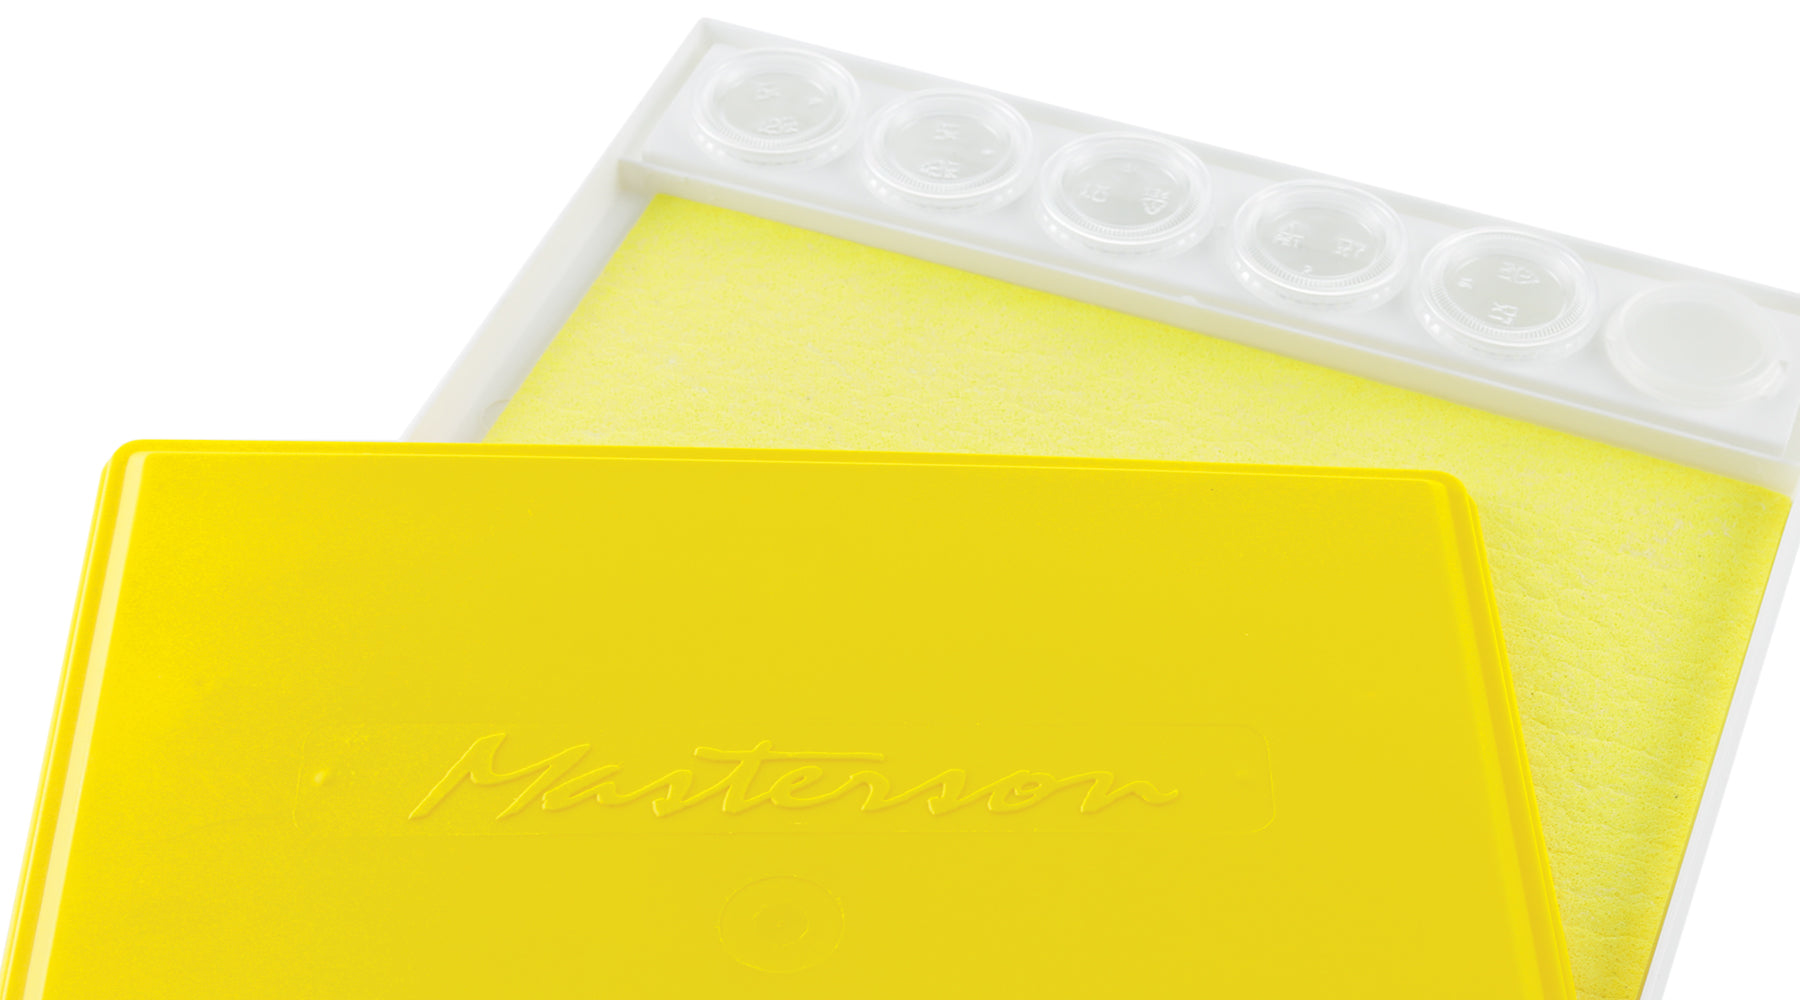 Masterson Sta-Wet Sponge Refill Packs